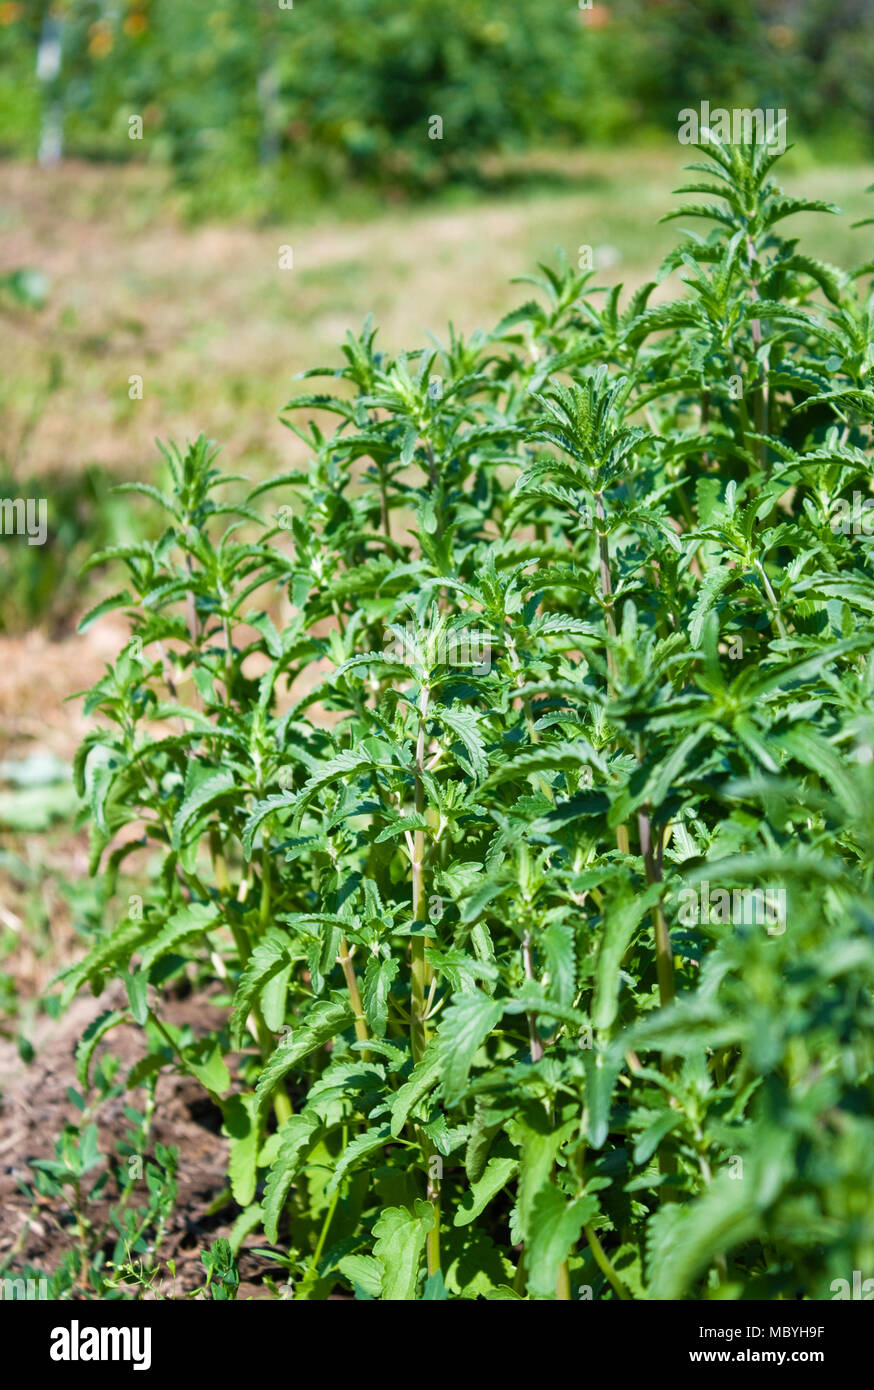 Medicinal grass (Dracocephalum moldavica L.) grows in a garden Stock Photo